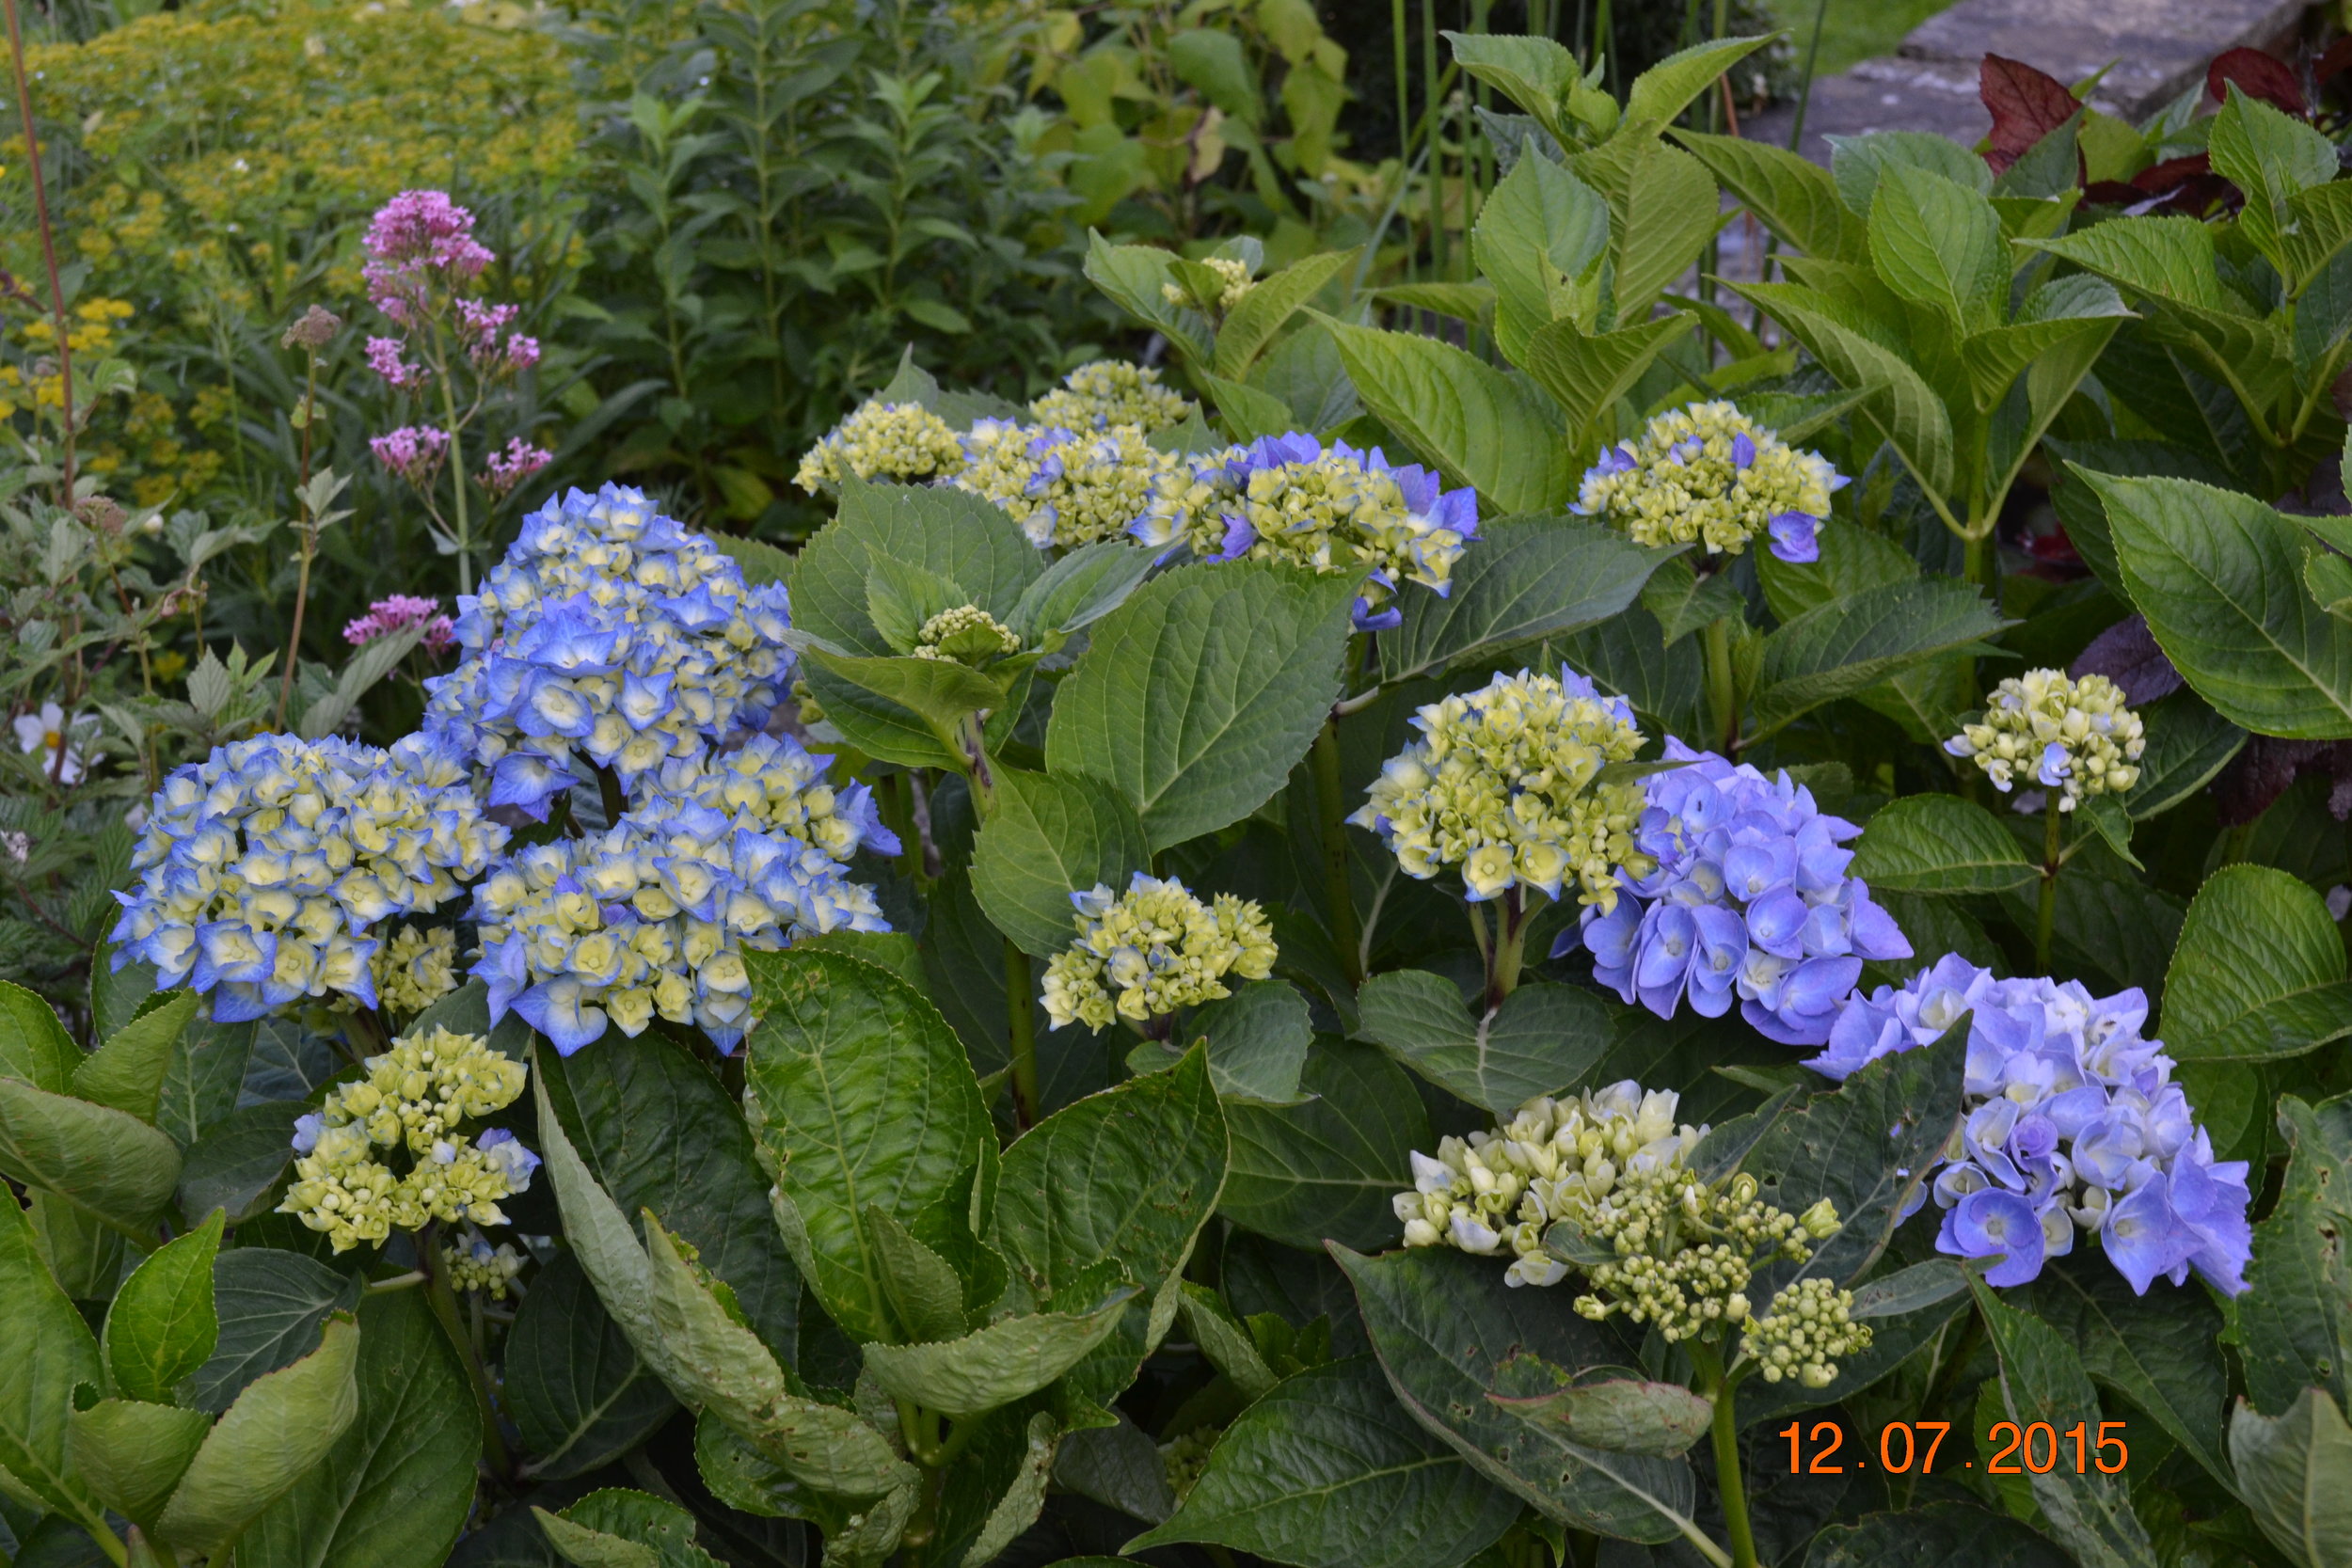 Wales 2015 garden summer flower arranging at home 032.JPG